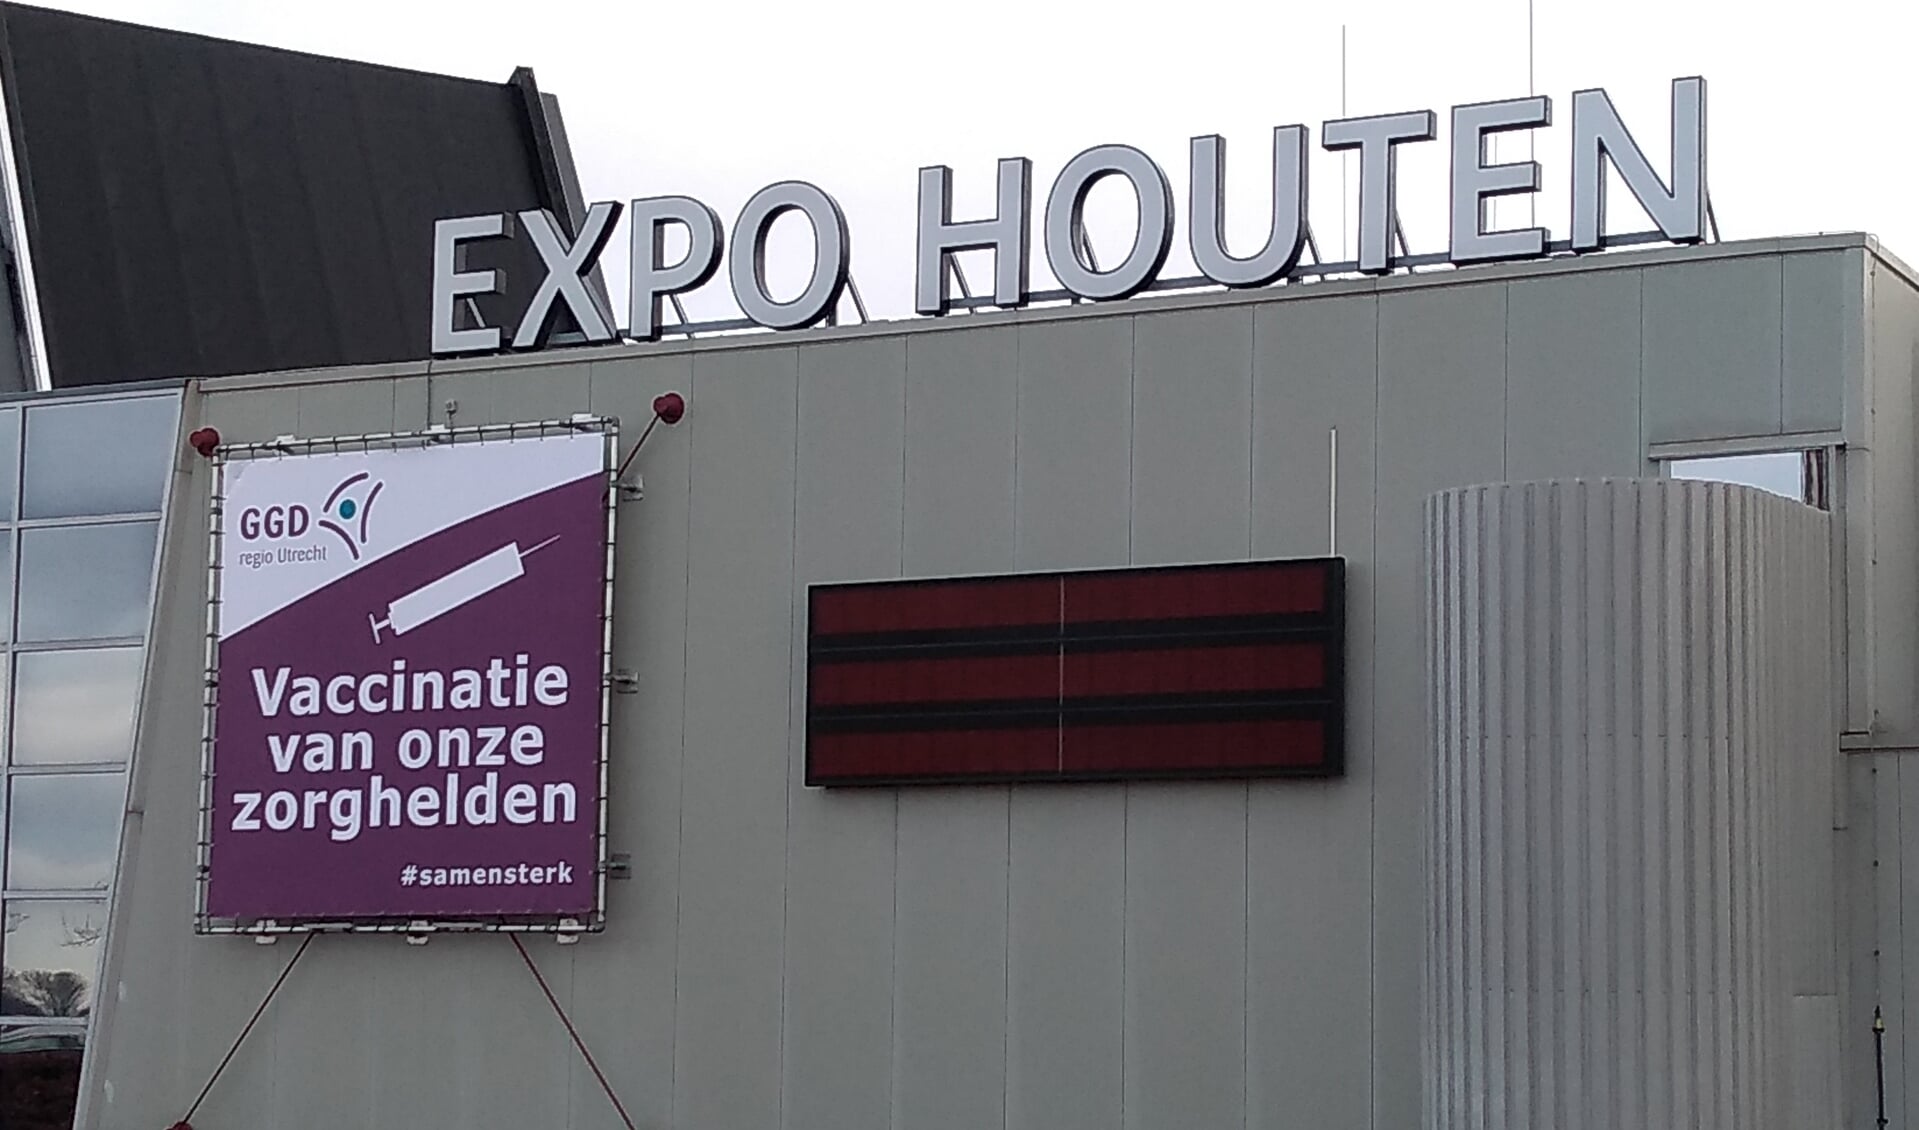 De eerste vaccinatielocatie van de GGD in de provincie Utrecht was Expo Houten